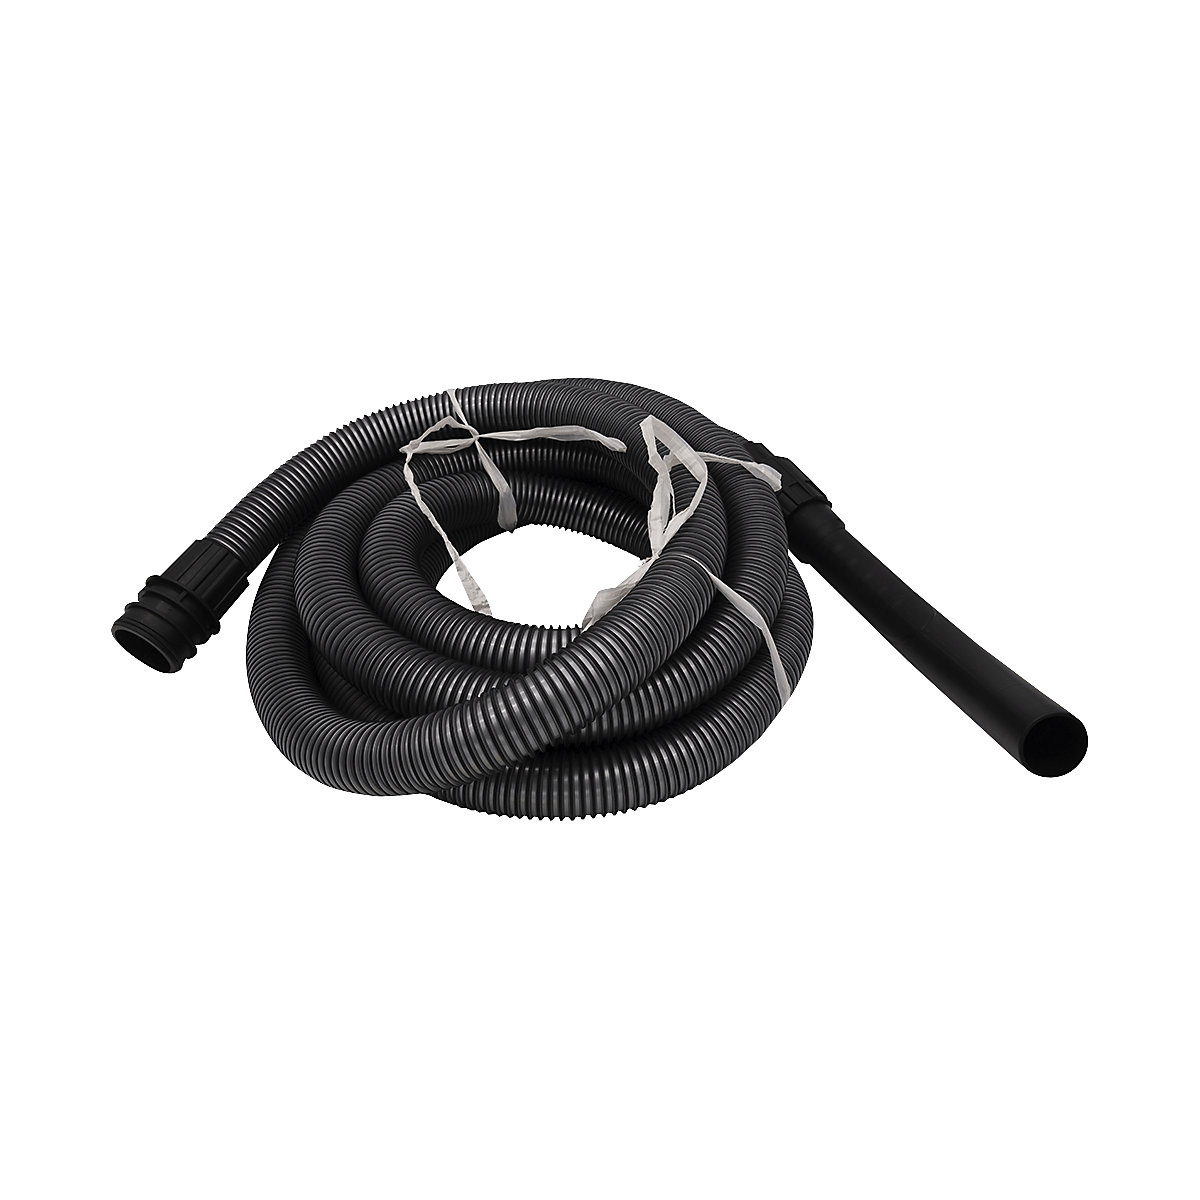 Suction hose D35 – Sprintus